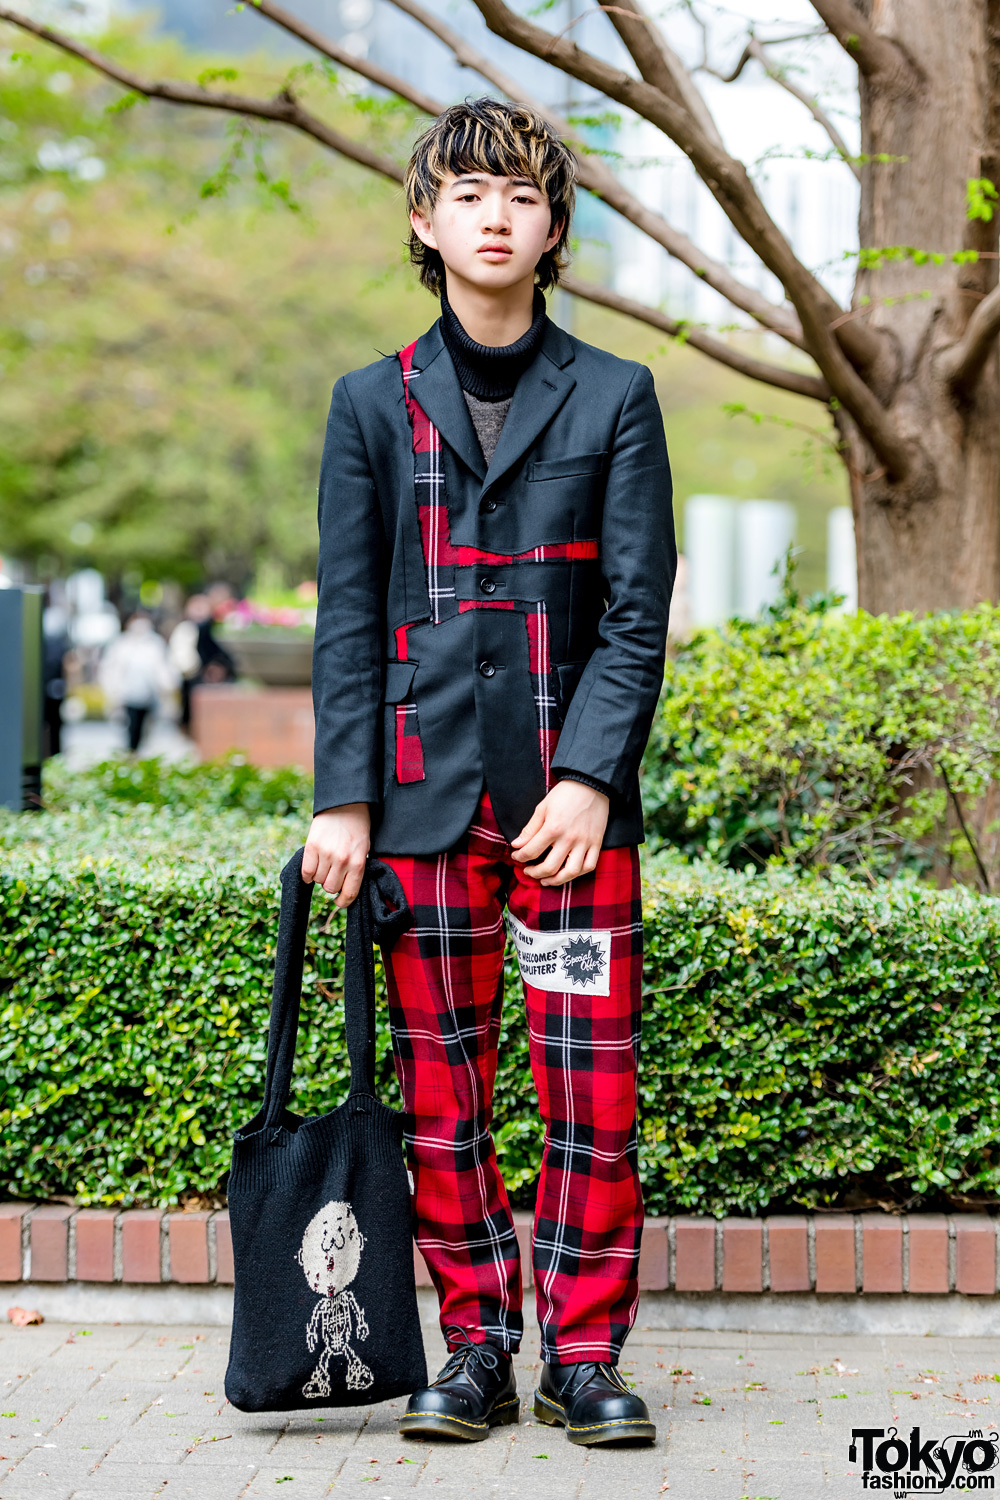 Black & Red Plaid Suit Vintage Style w/ Comme des Garcons Homme 